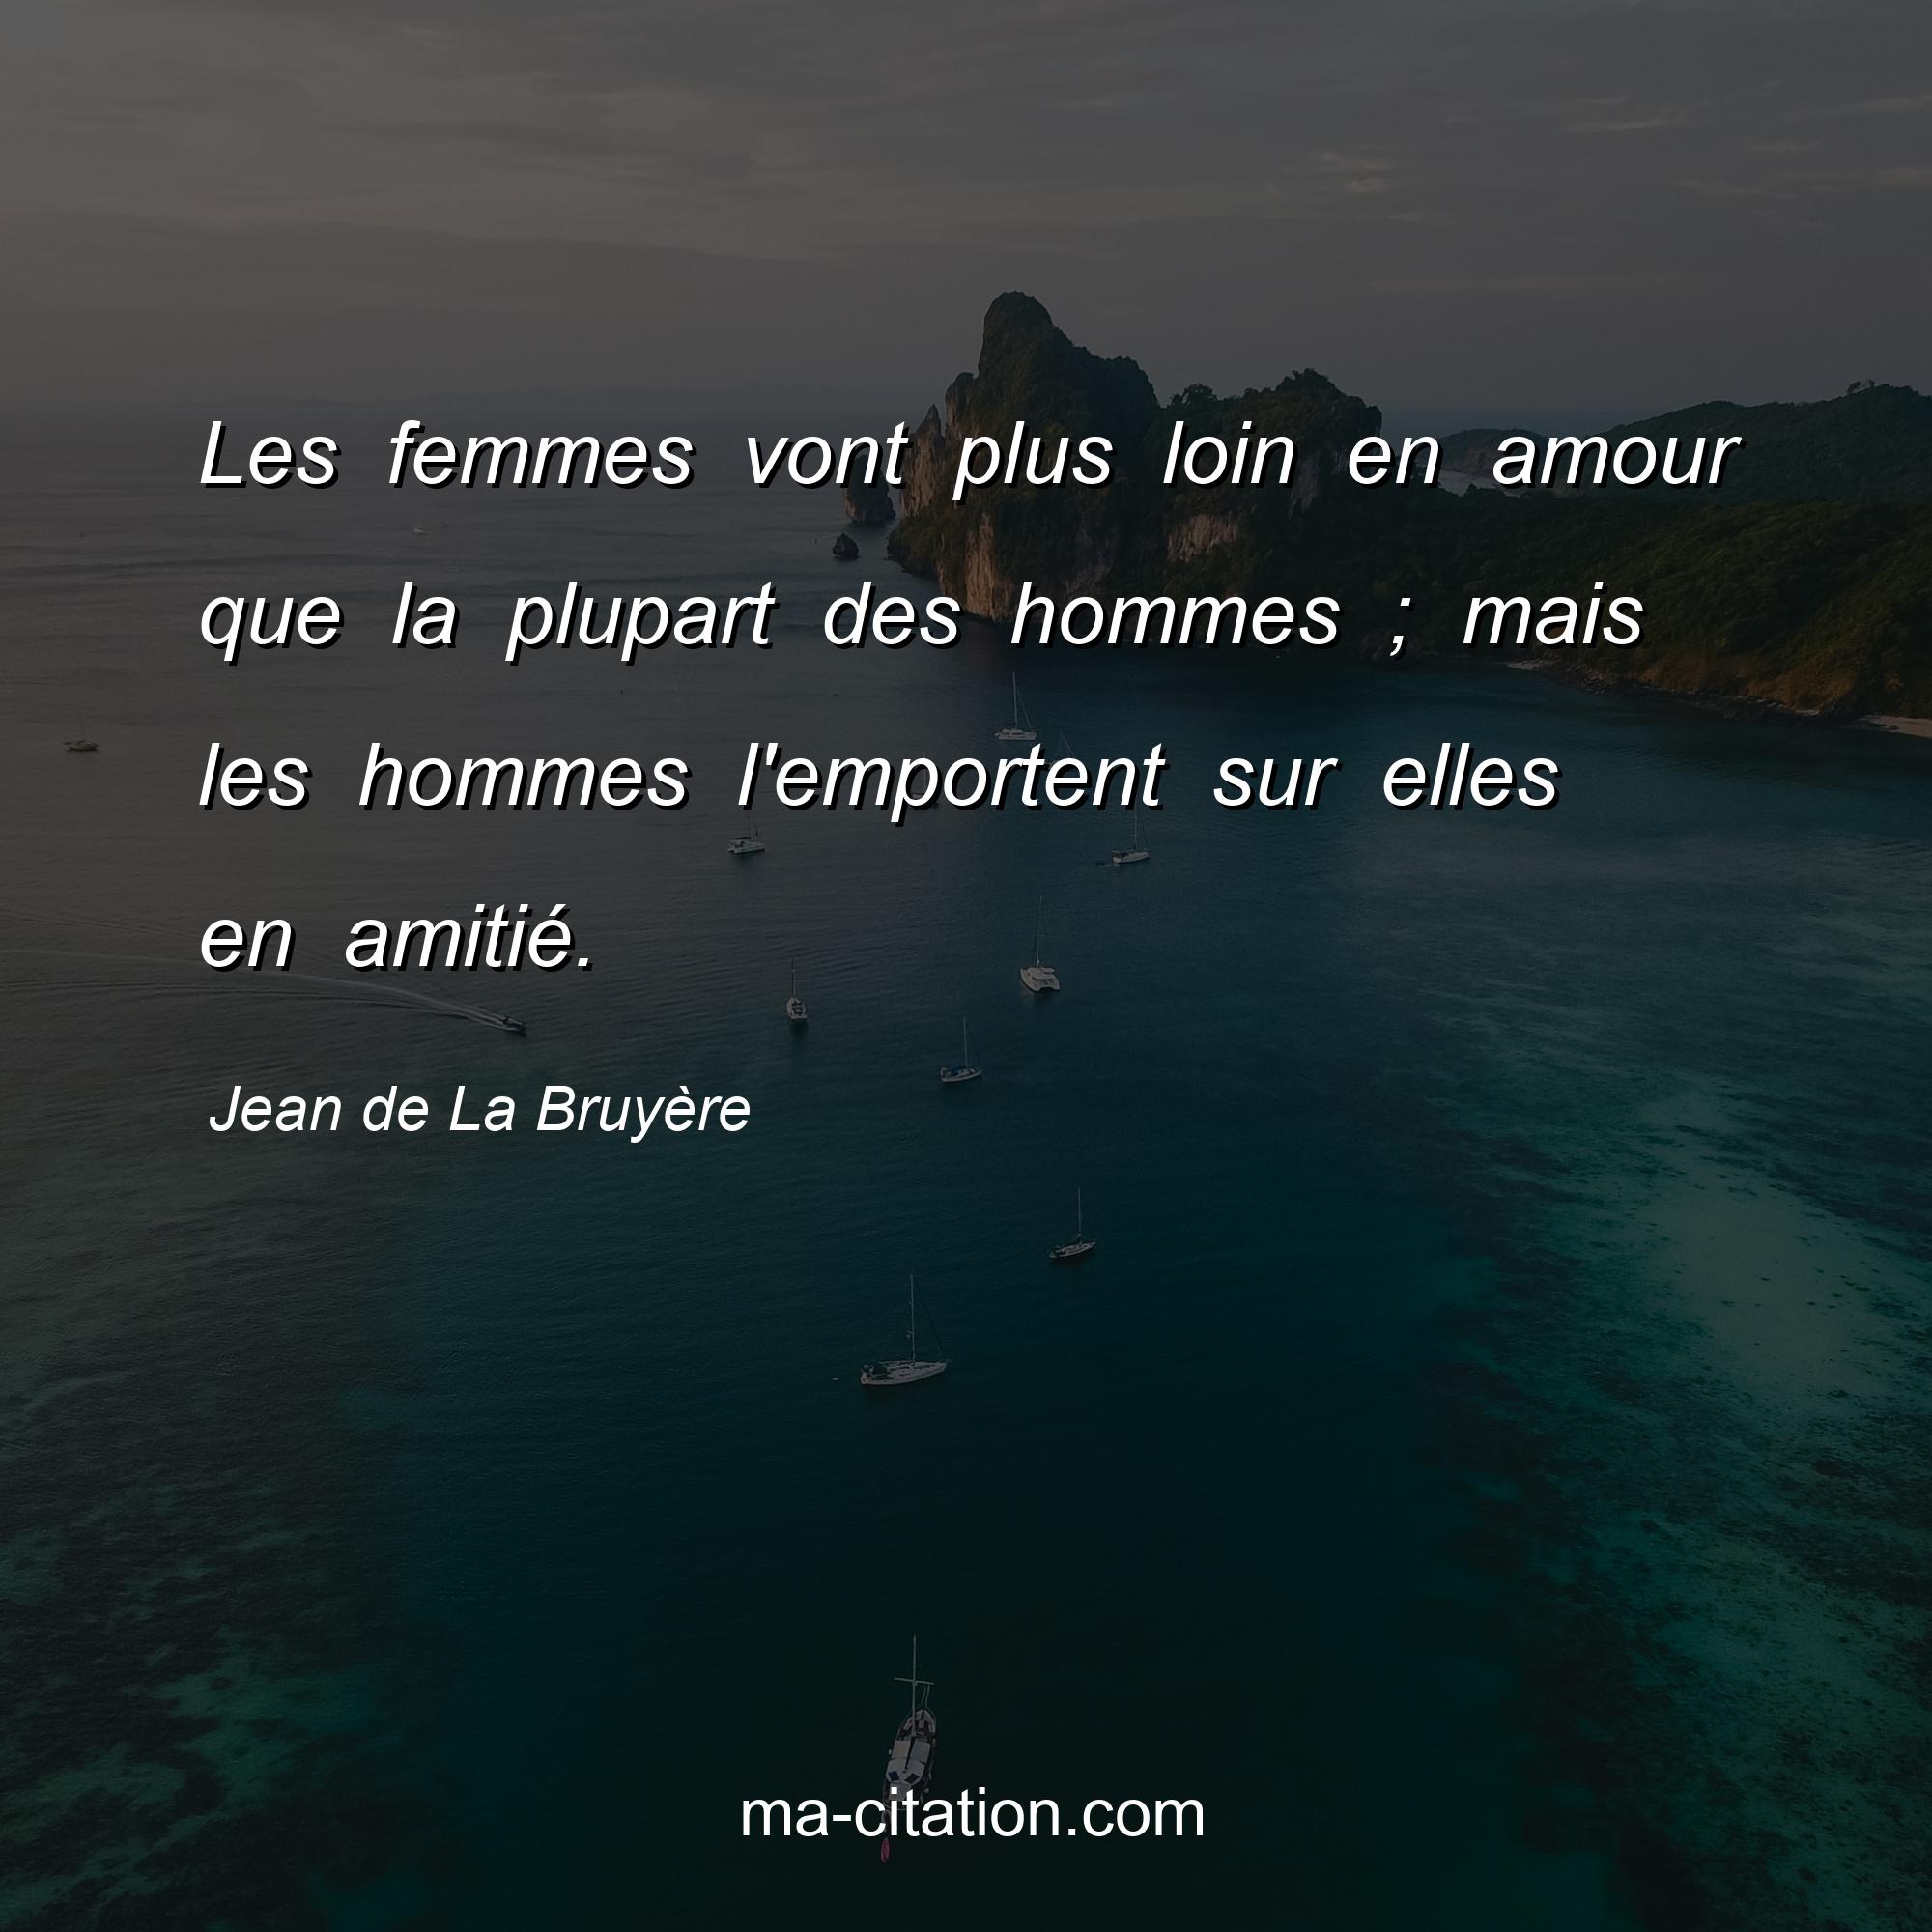 Jean de La Bruyère : Les femmes vont plus loin en amour que la plupart des hommes ; mais les hommes l'emportent sur elles en amitié.